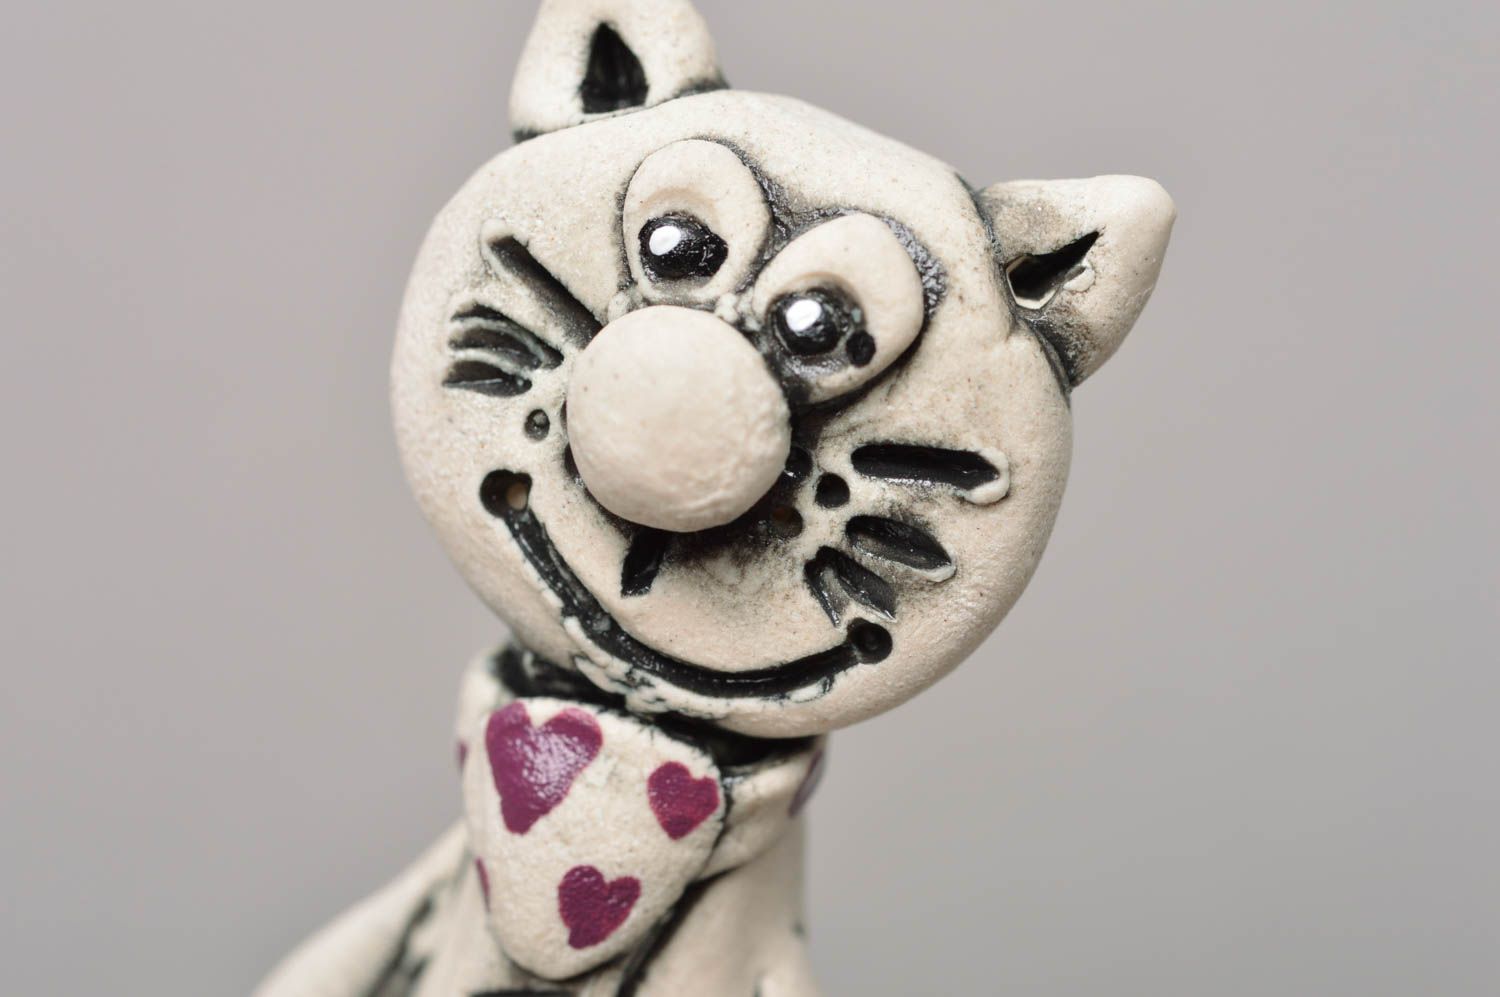 Фарфоровая статуэтка расписанная глазурью и акрилом хэнд мэйд Кот в галстуке фото 3